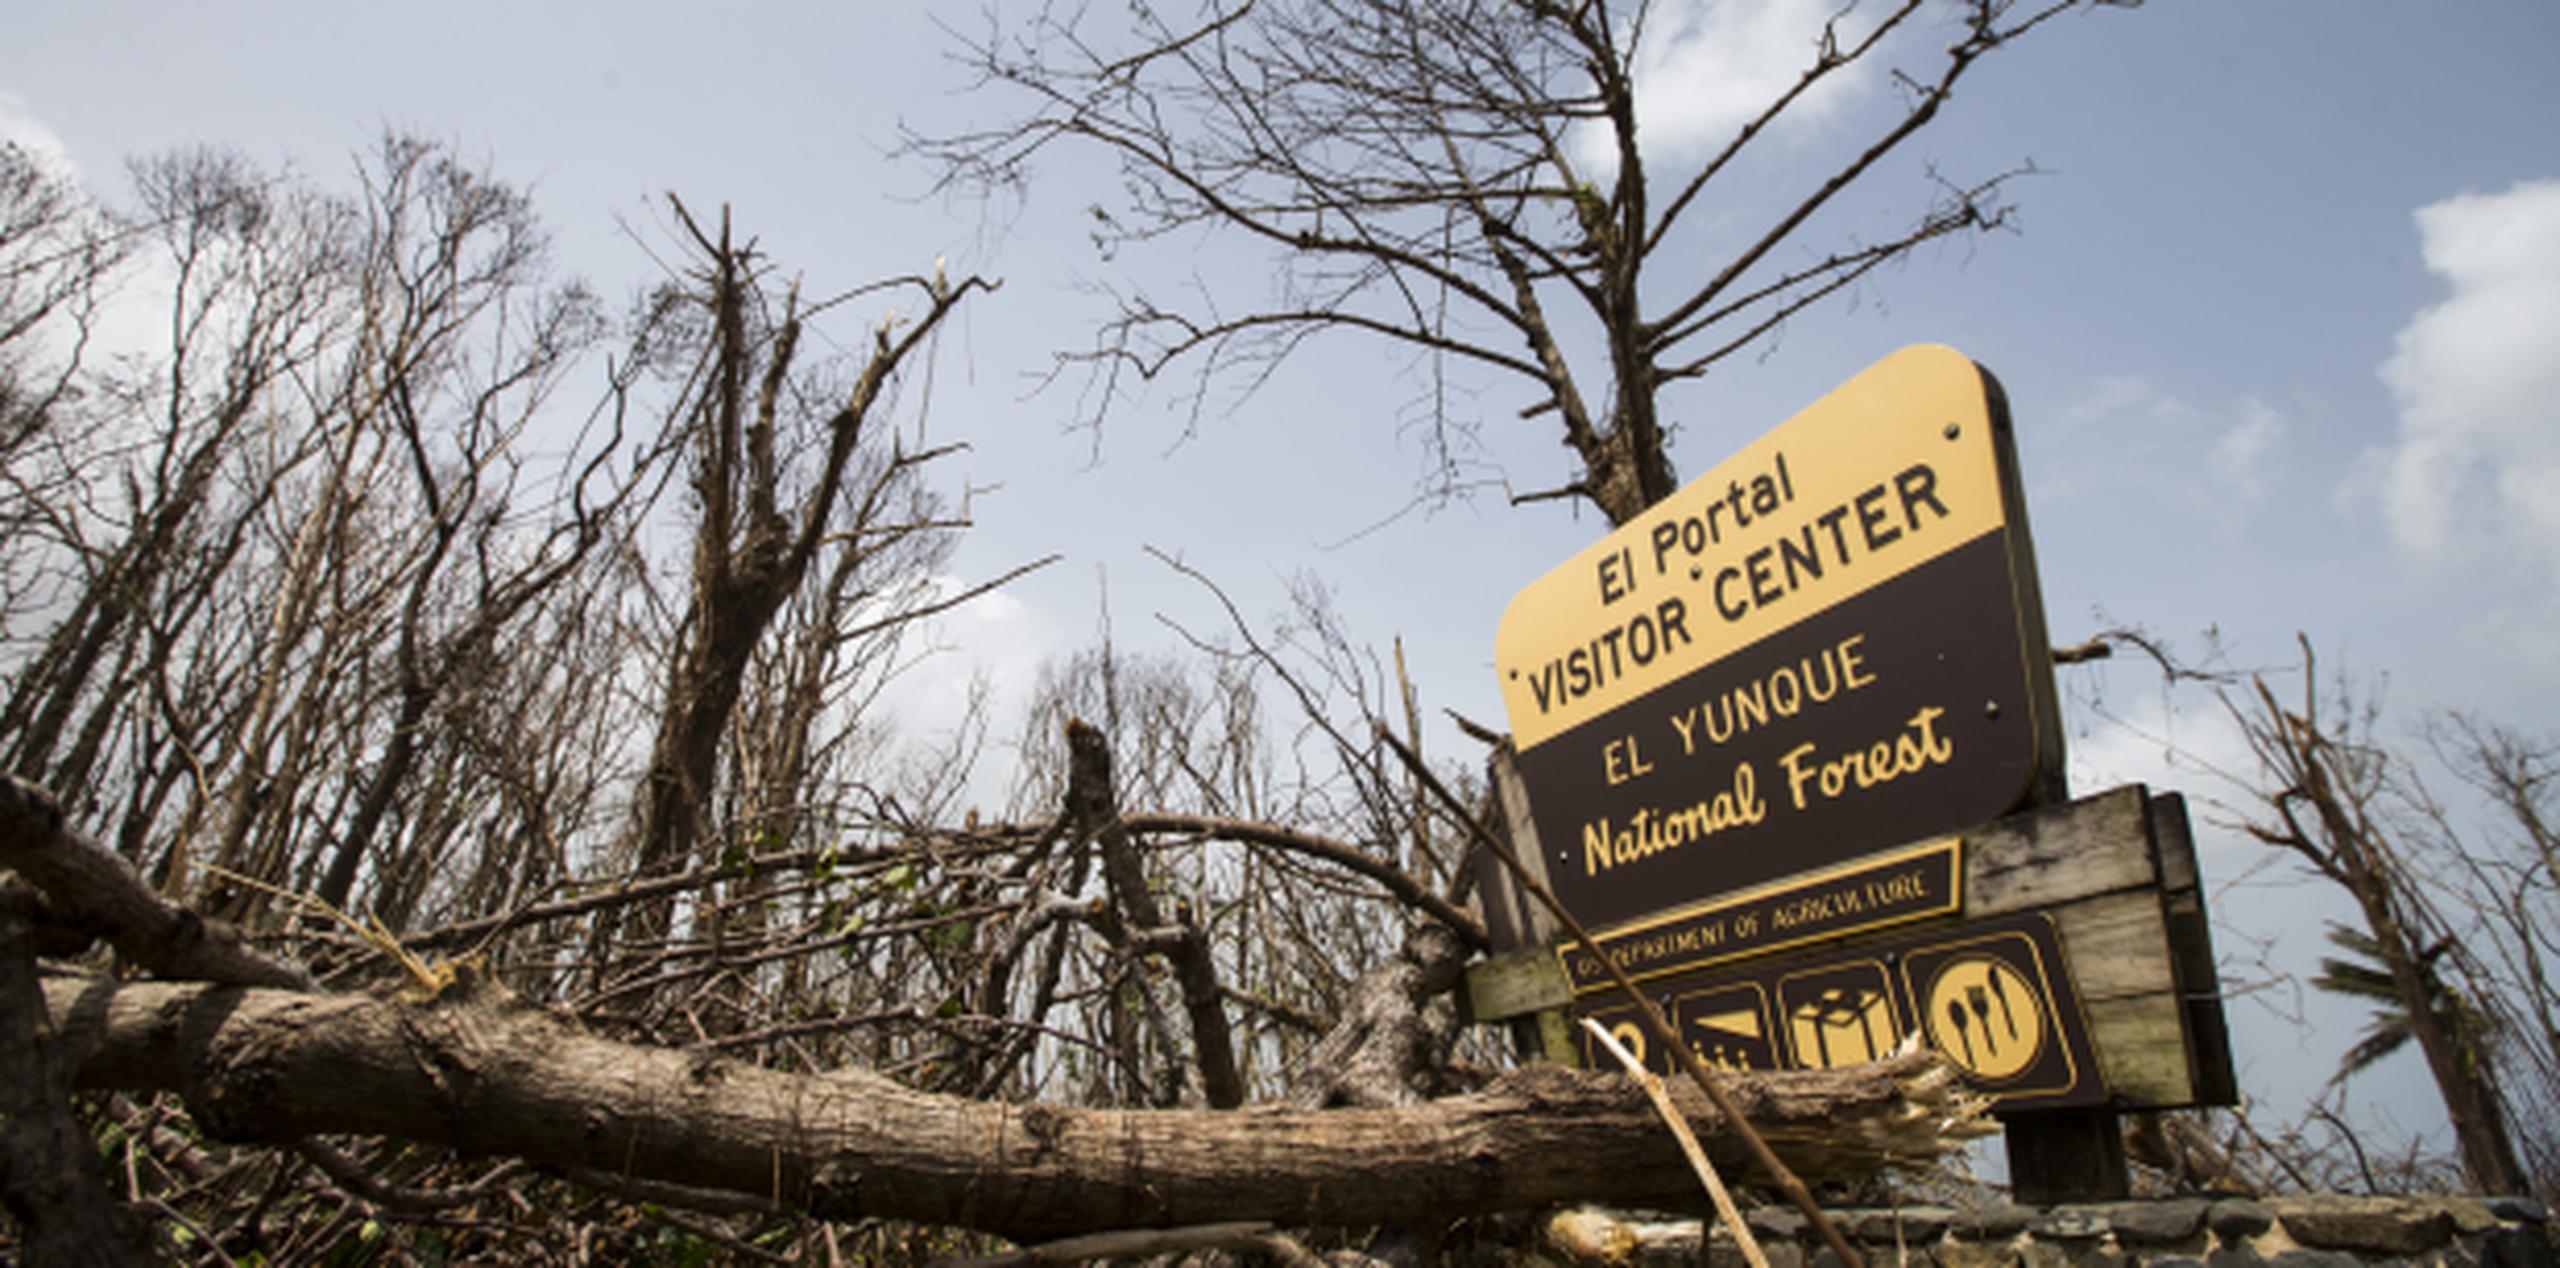 El bosque nacional El Yunque, al igual que los otros parques nacionales de la región, fue severamente afectado por el huracán María. (tonito.zayas@gfrmedia.com)